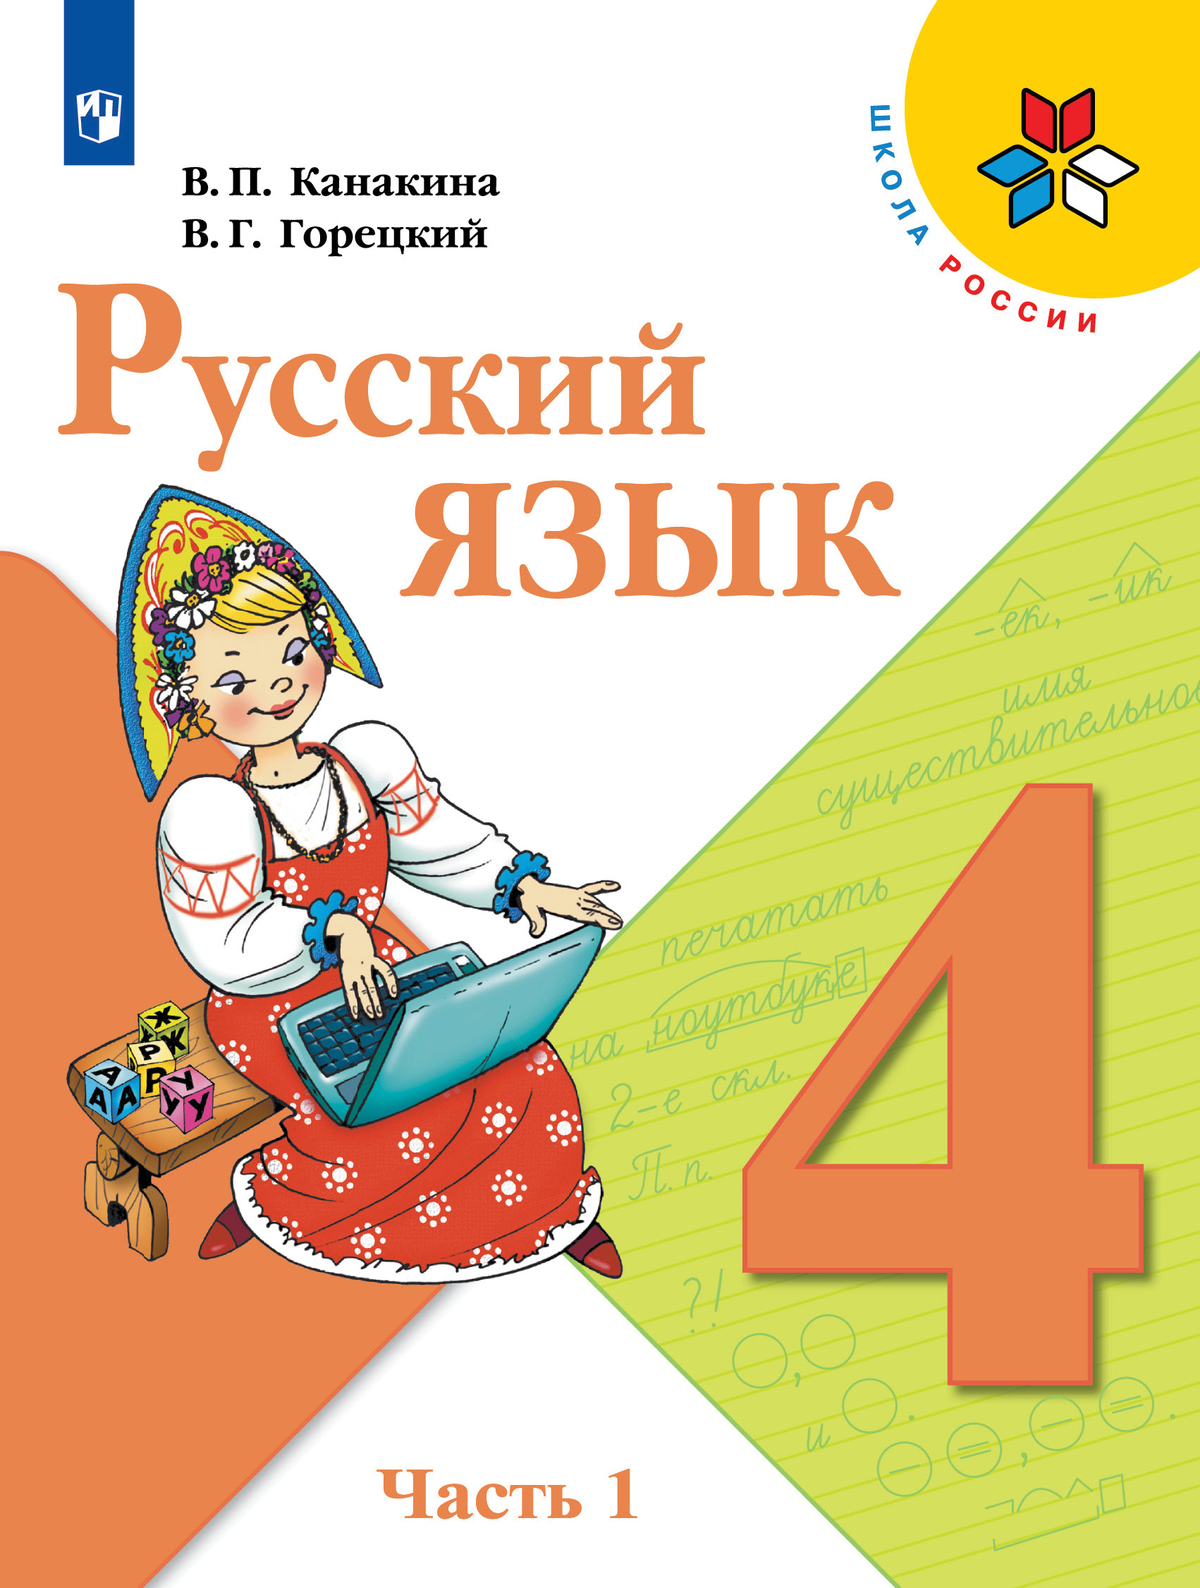 Русский язык. 4 класс. Учебник. В 2 ч. Часть 1 1